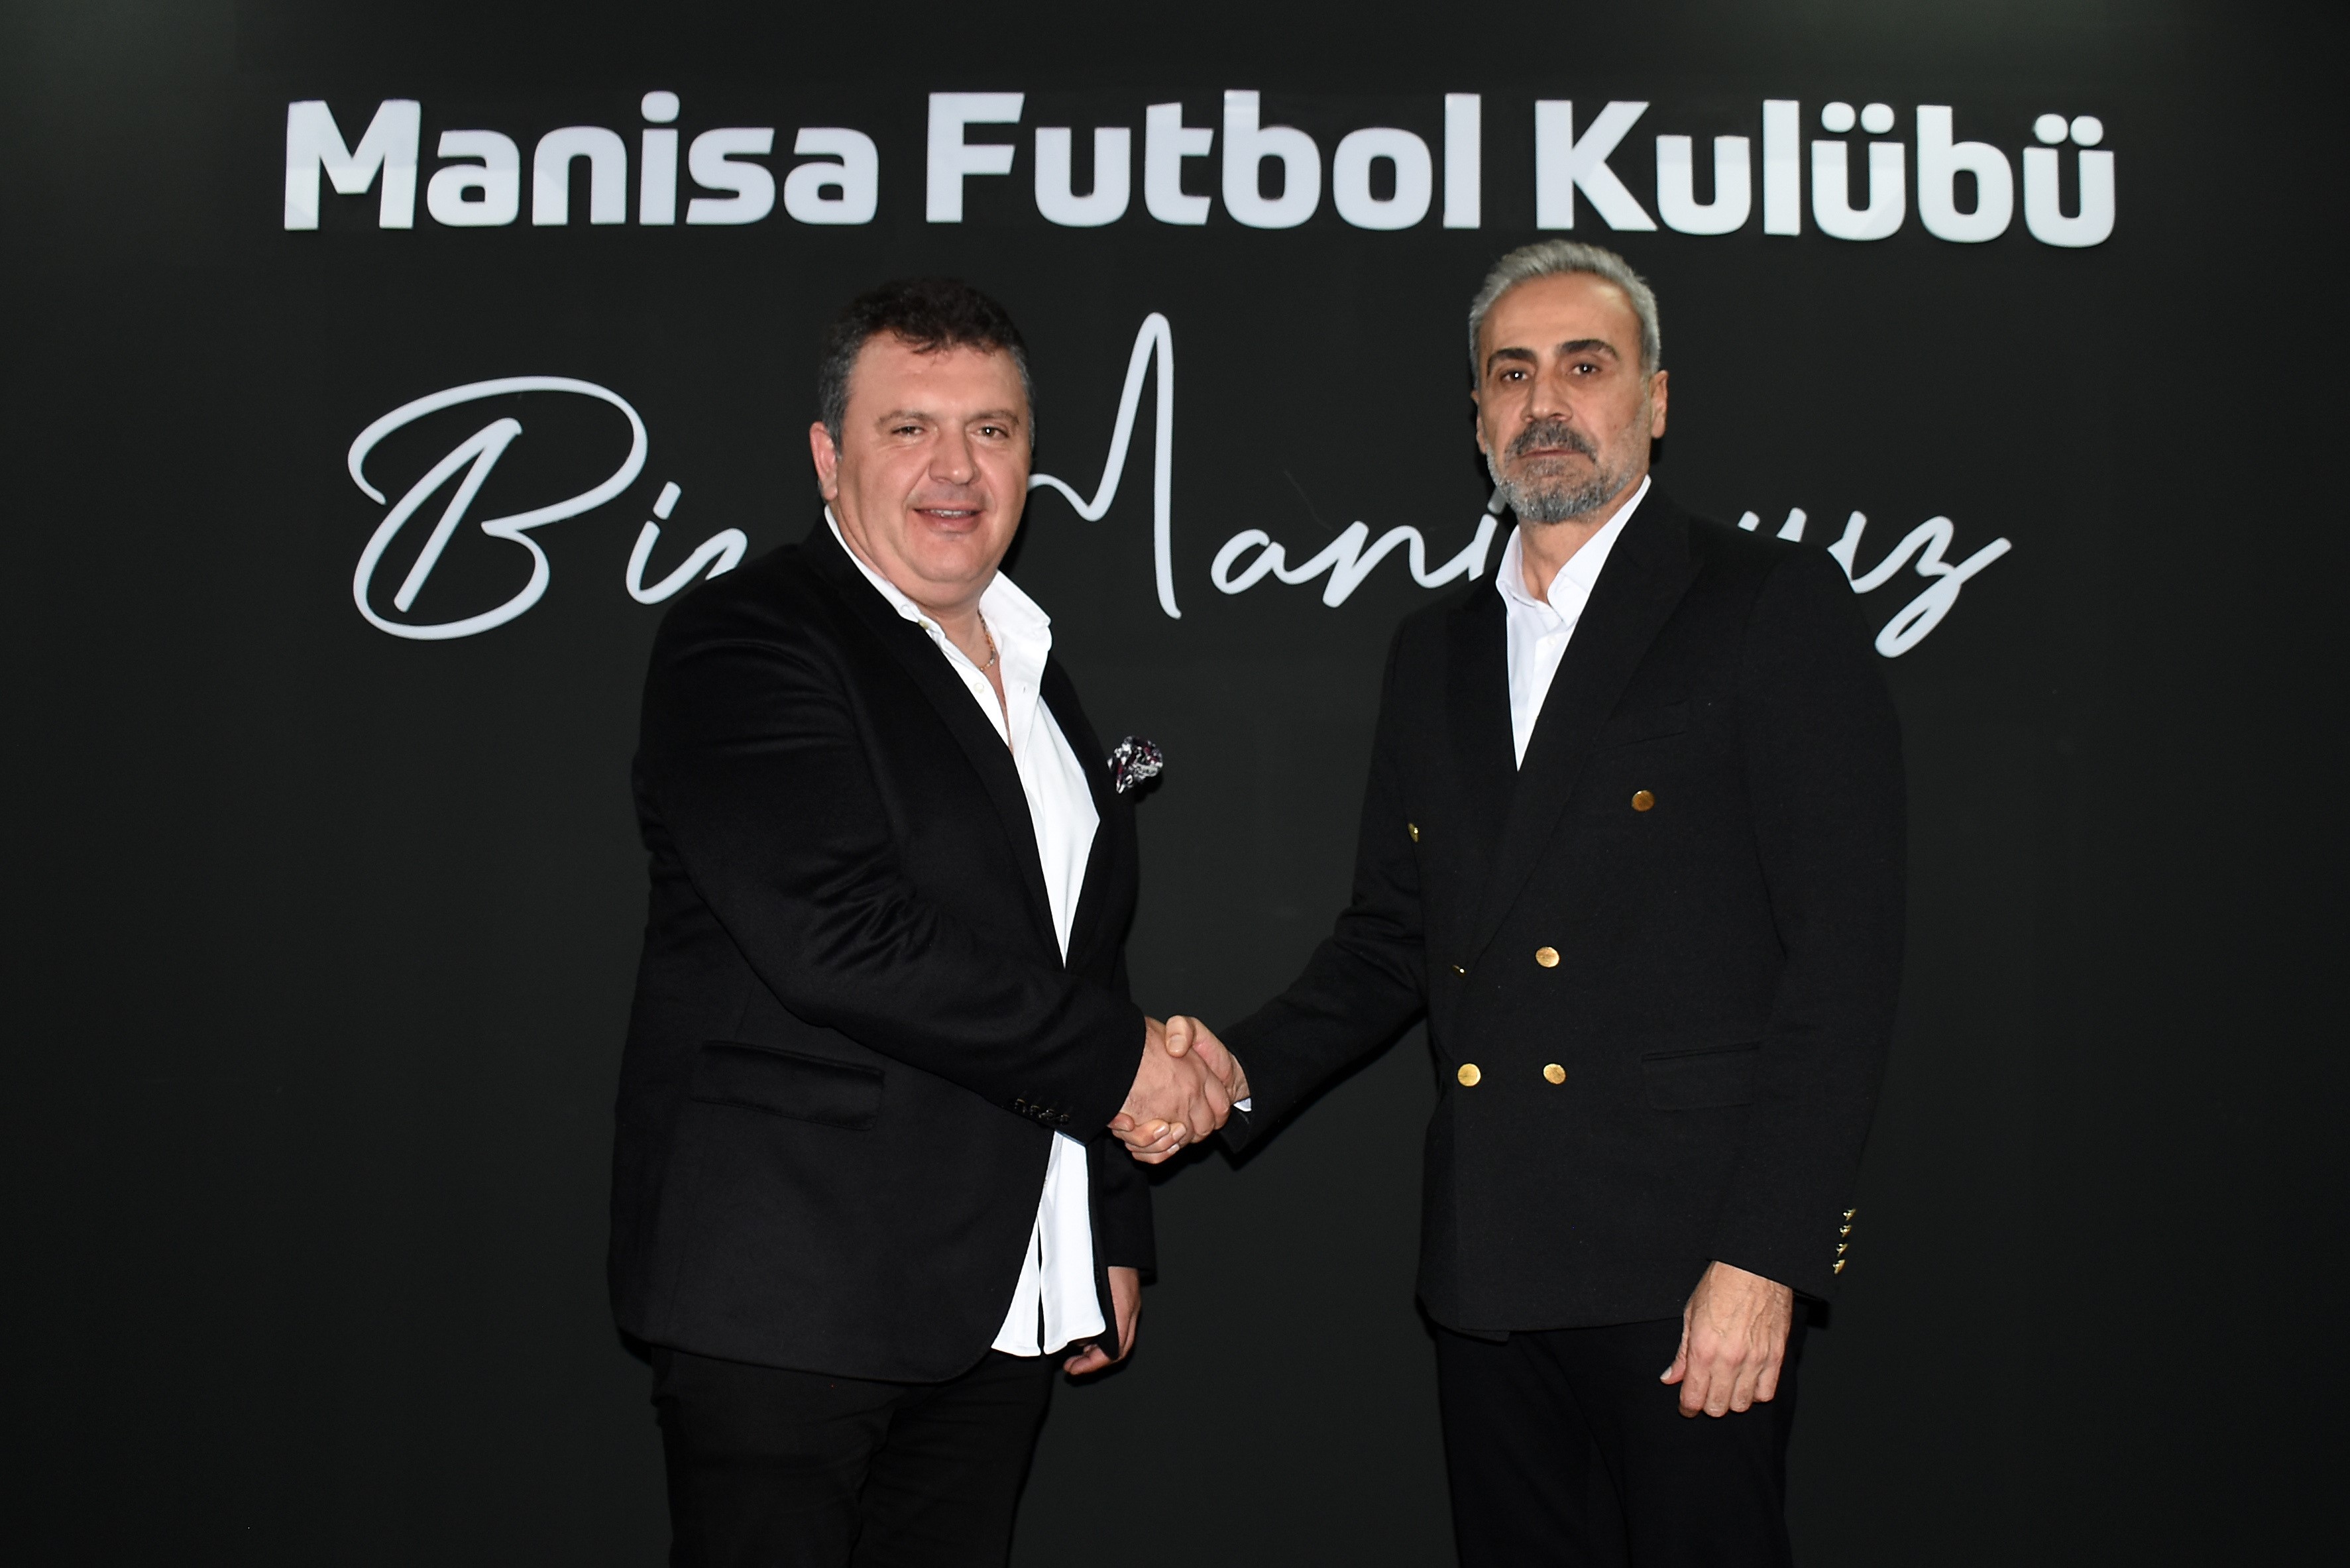 Manisa FK'da yeni teknik direktör Mustafa Dalcı oldu!-1